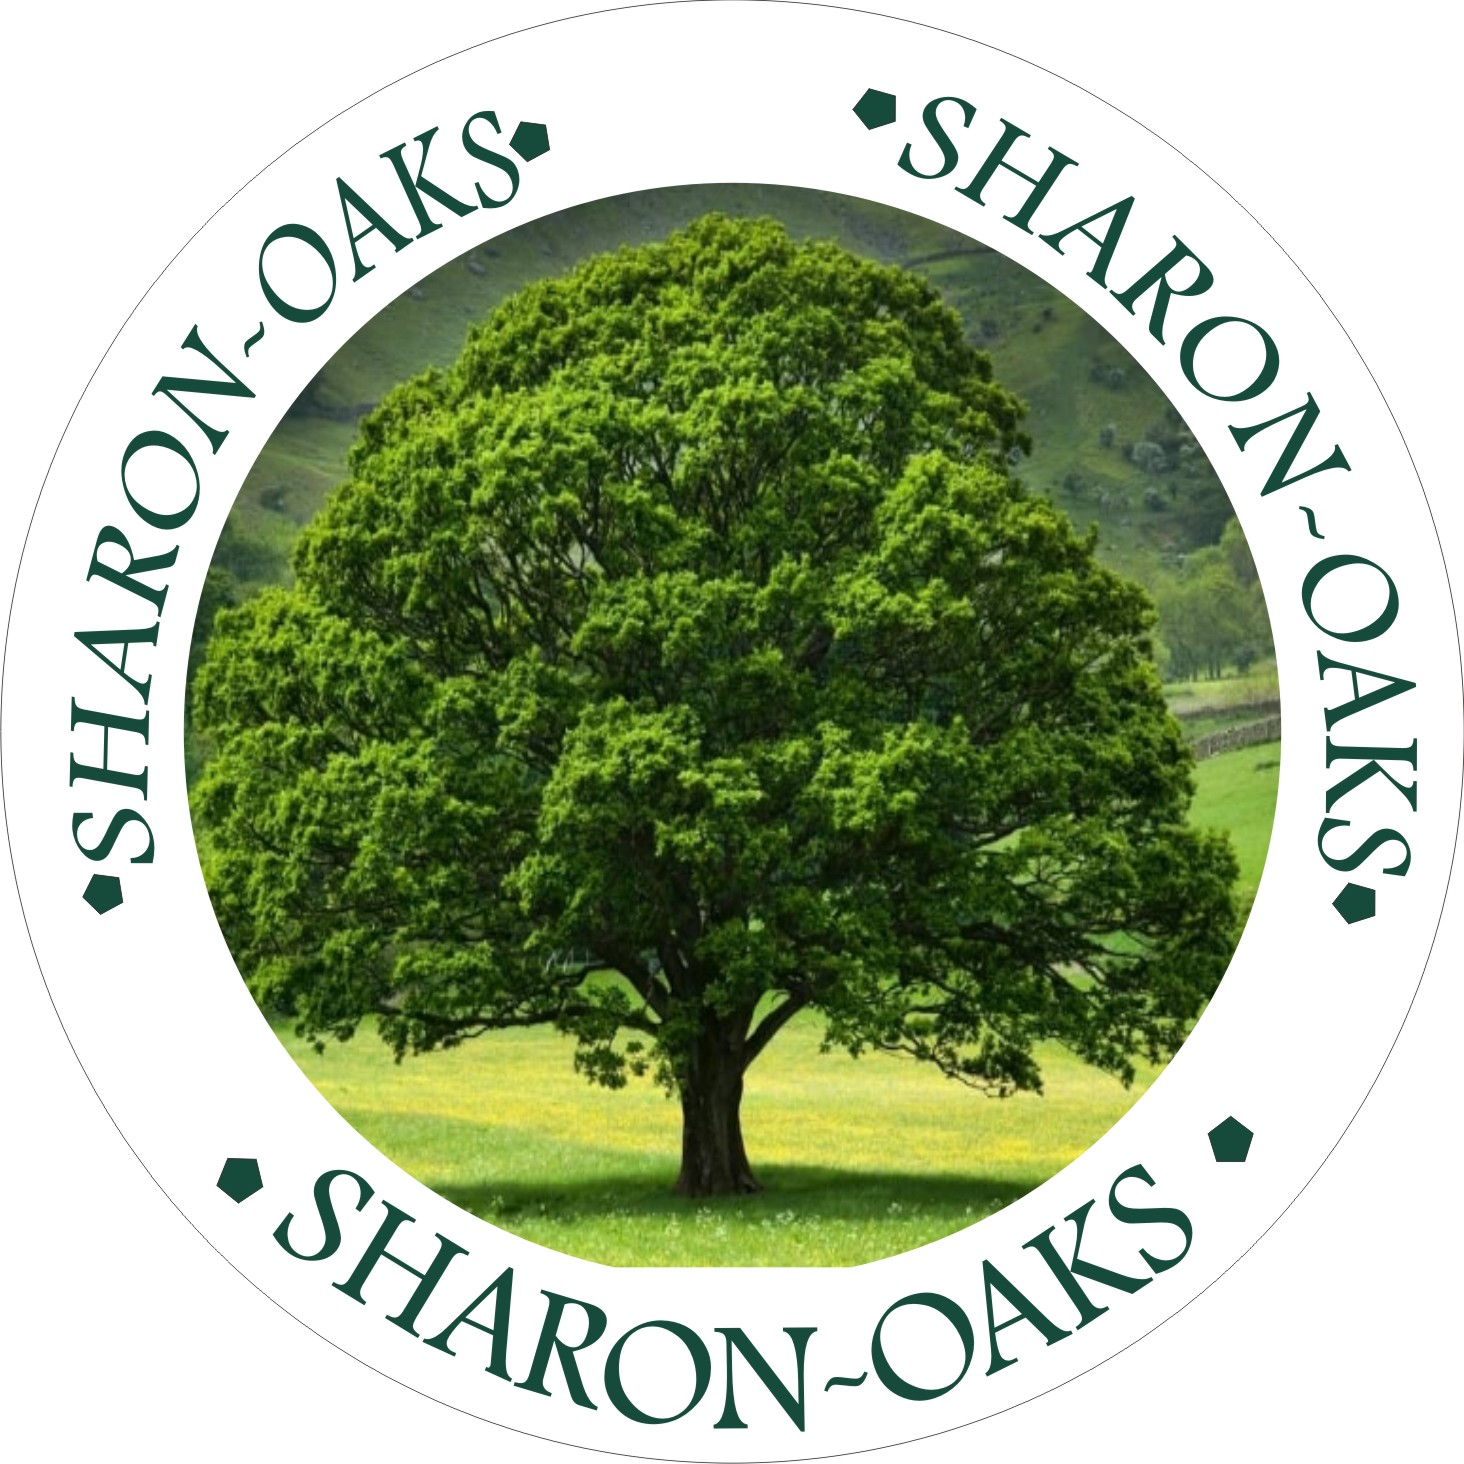 Sharon-Oaks Ng